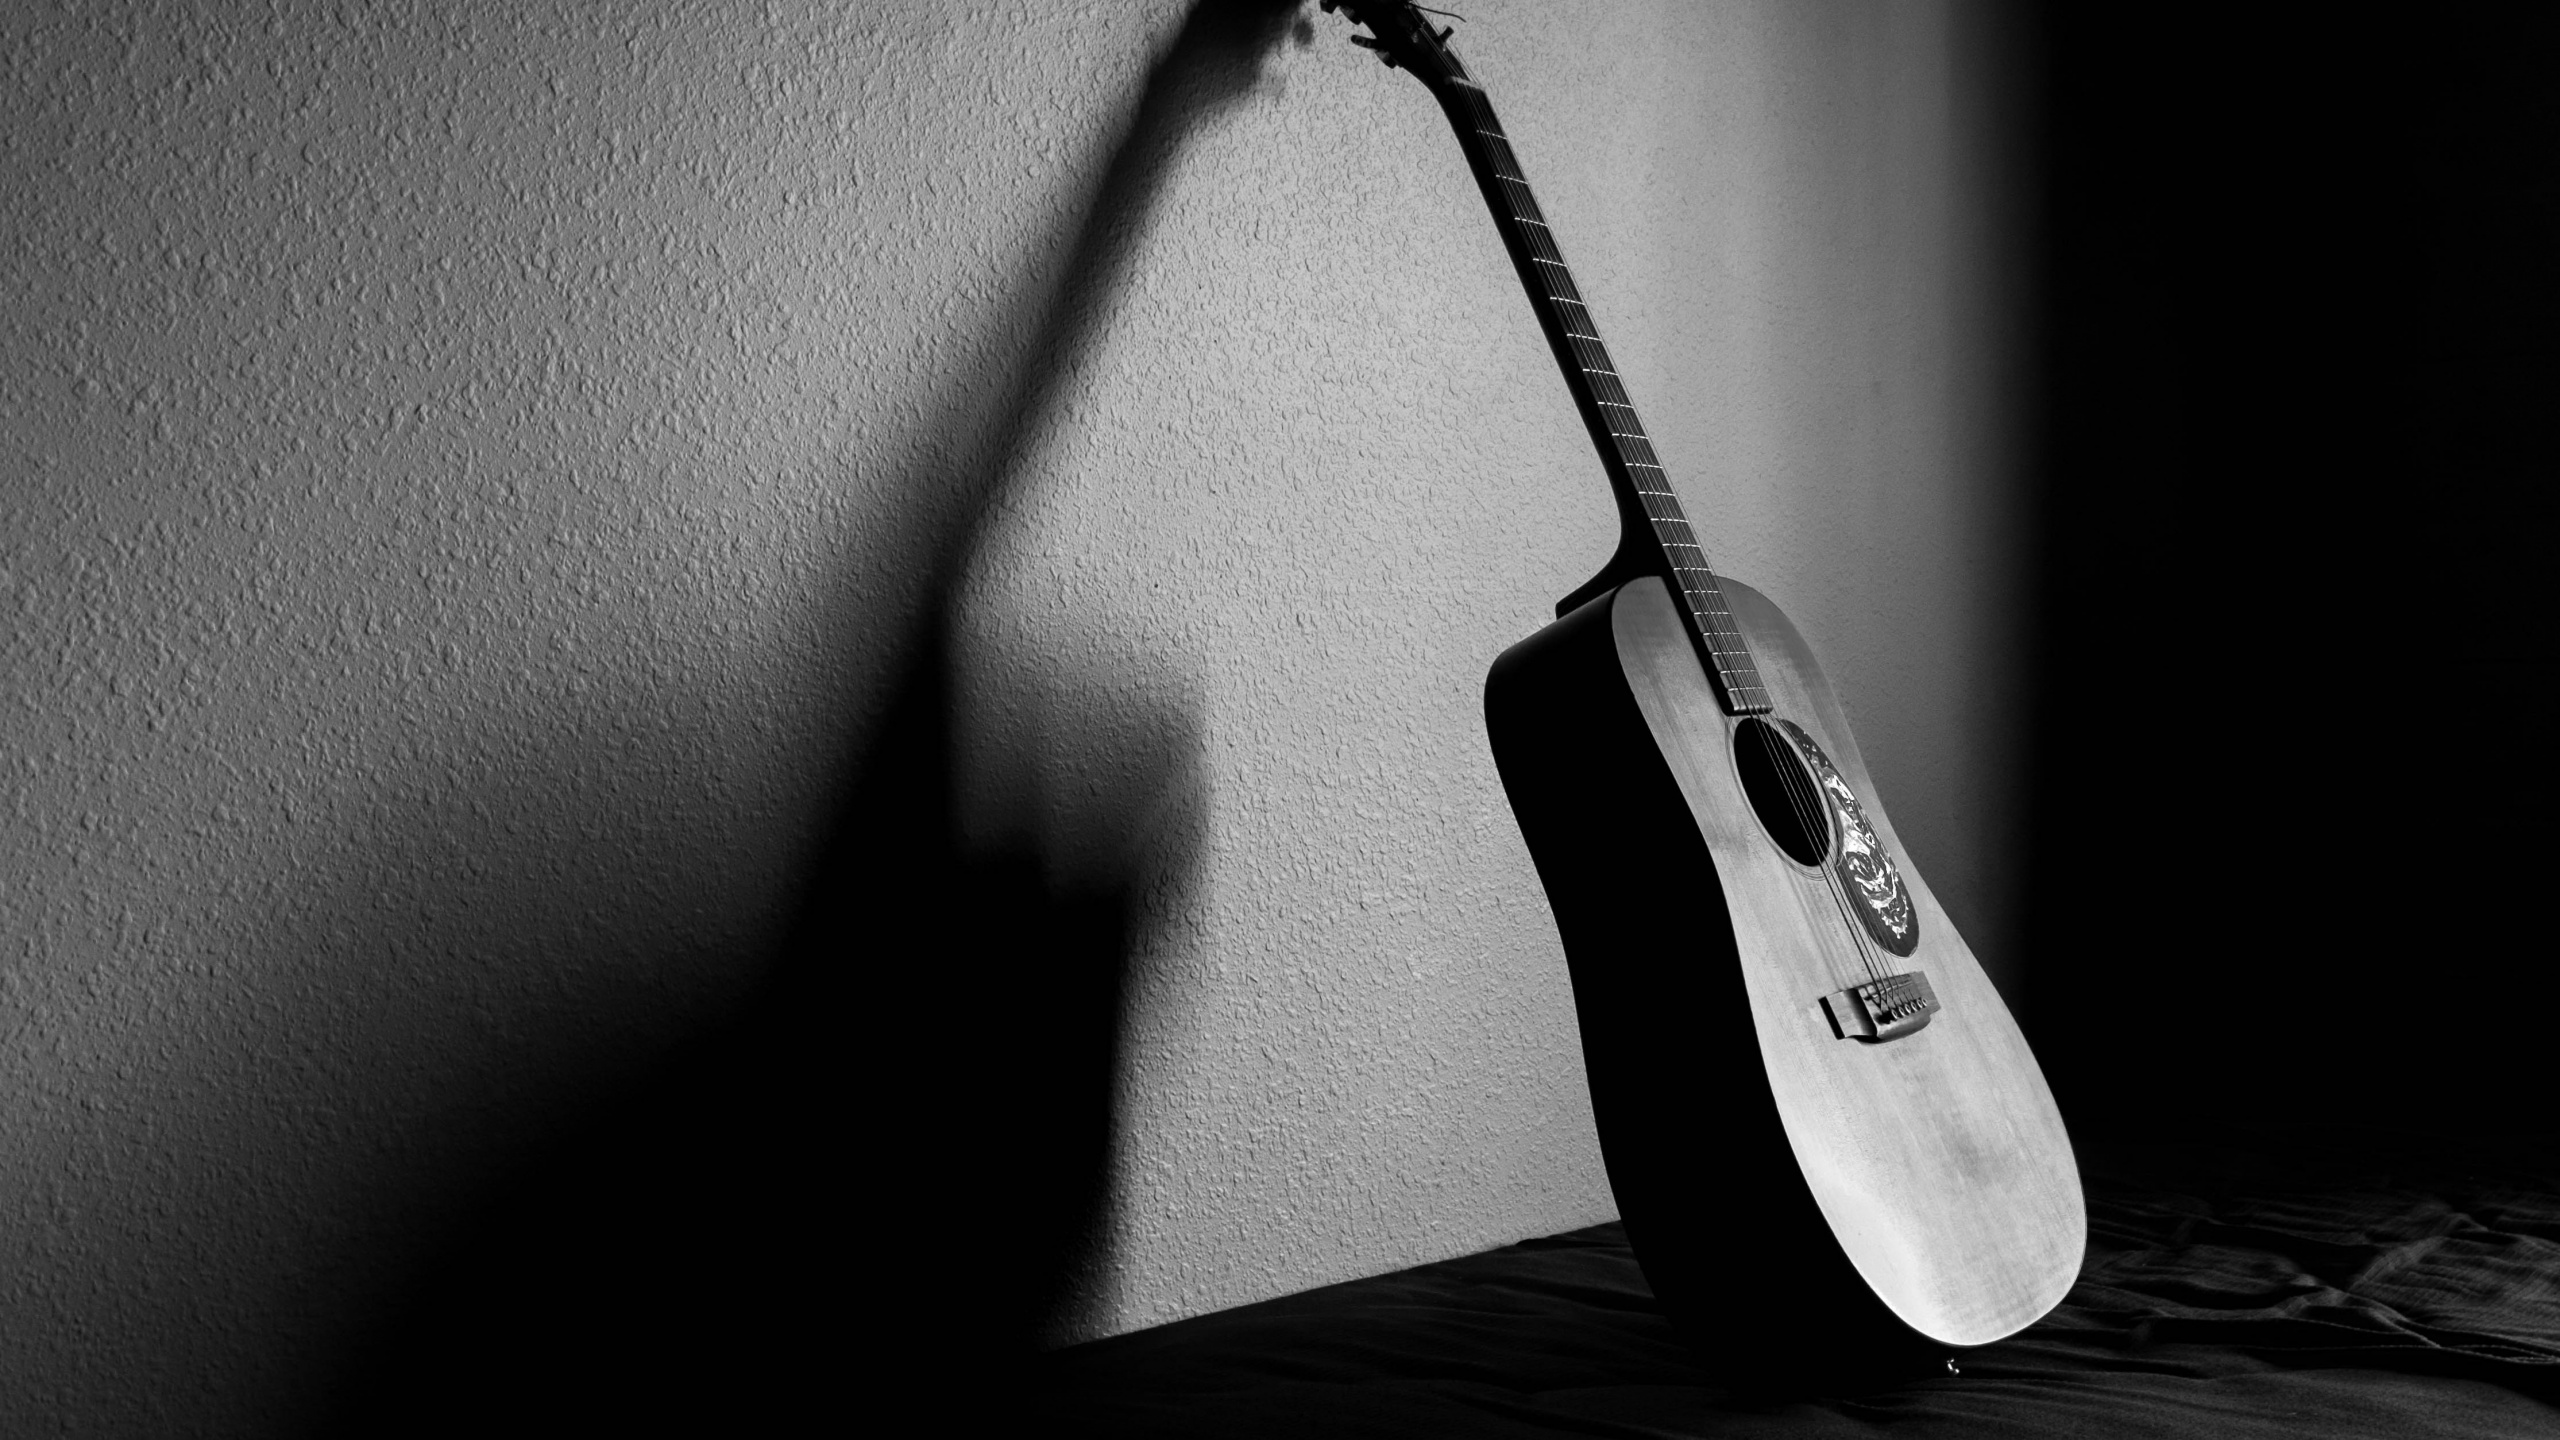 吉他, 声吉他, 拨弦乐器, 麦克风, 黑色和白色的 壁纸 2560x1440 允许